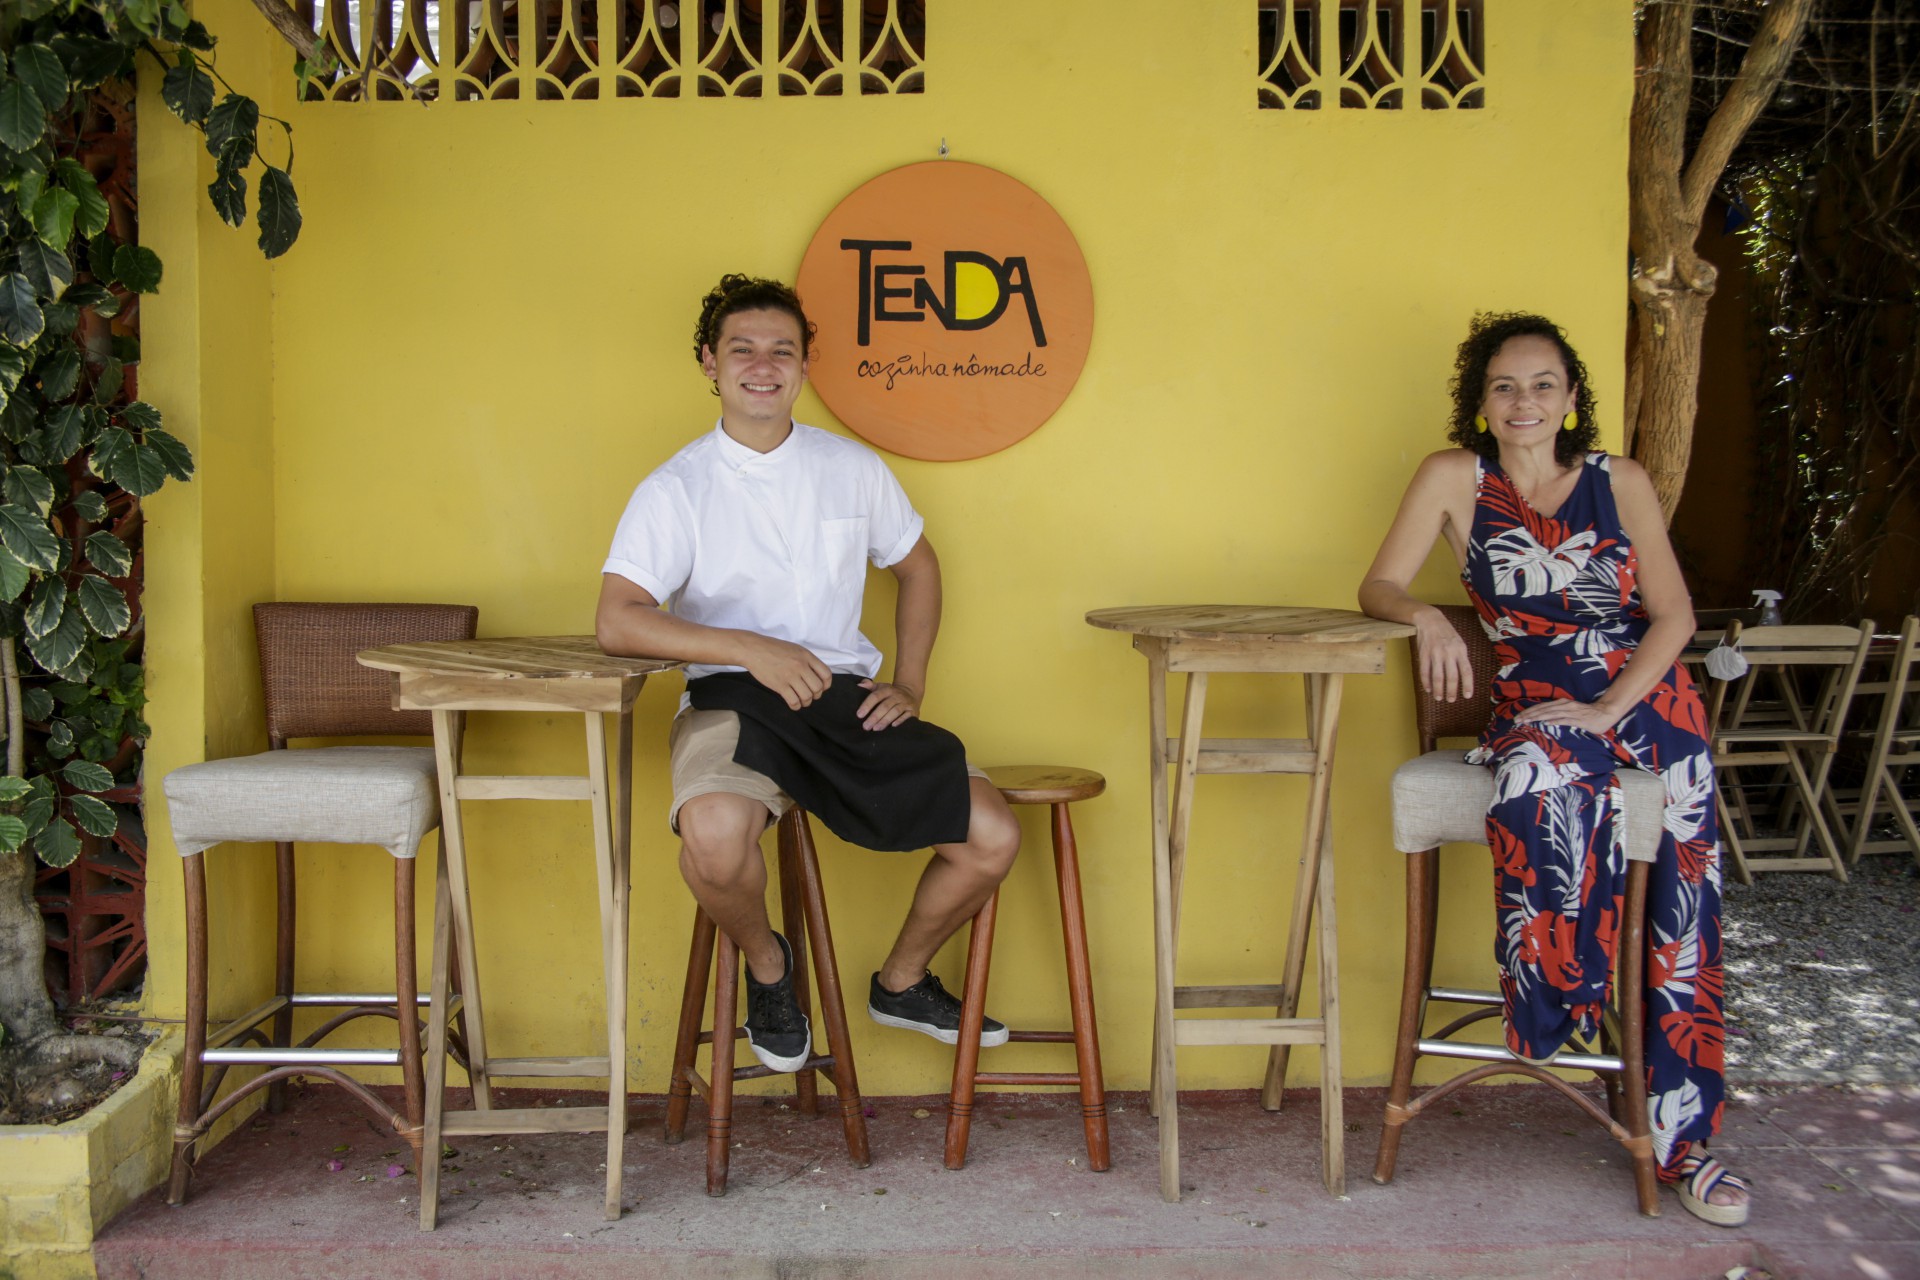 Cheffs do Tenda - Cozinha Nômade, Marcos Filho e Ana Alice Nogueira (Foto: Thais Mesquita)